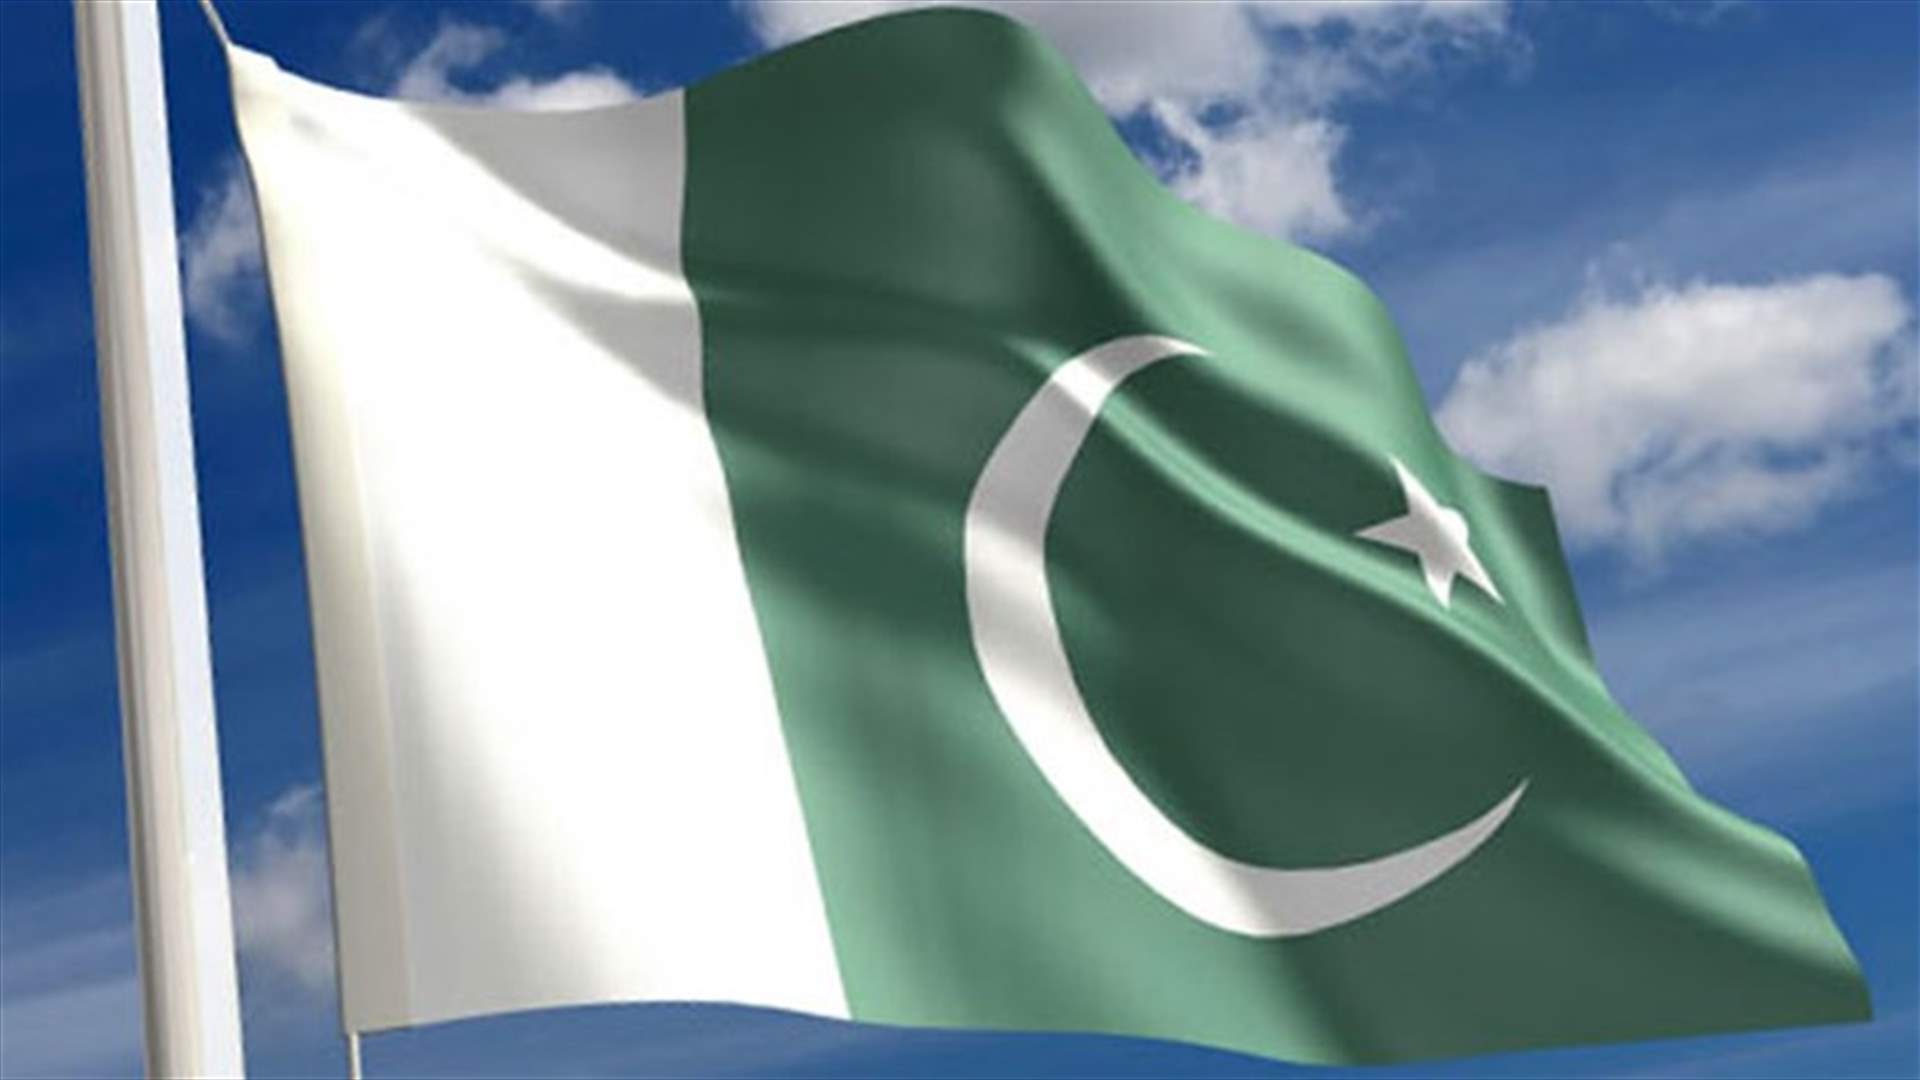  Suicide bomber kills at least ten in northwest Pakistan